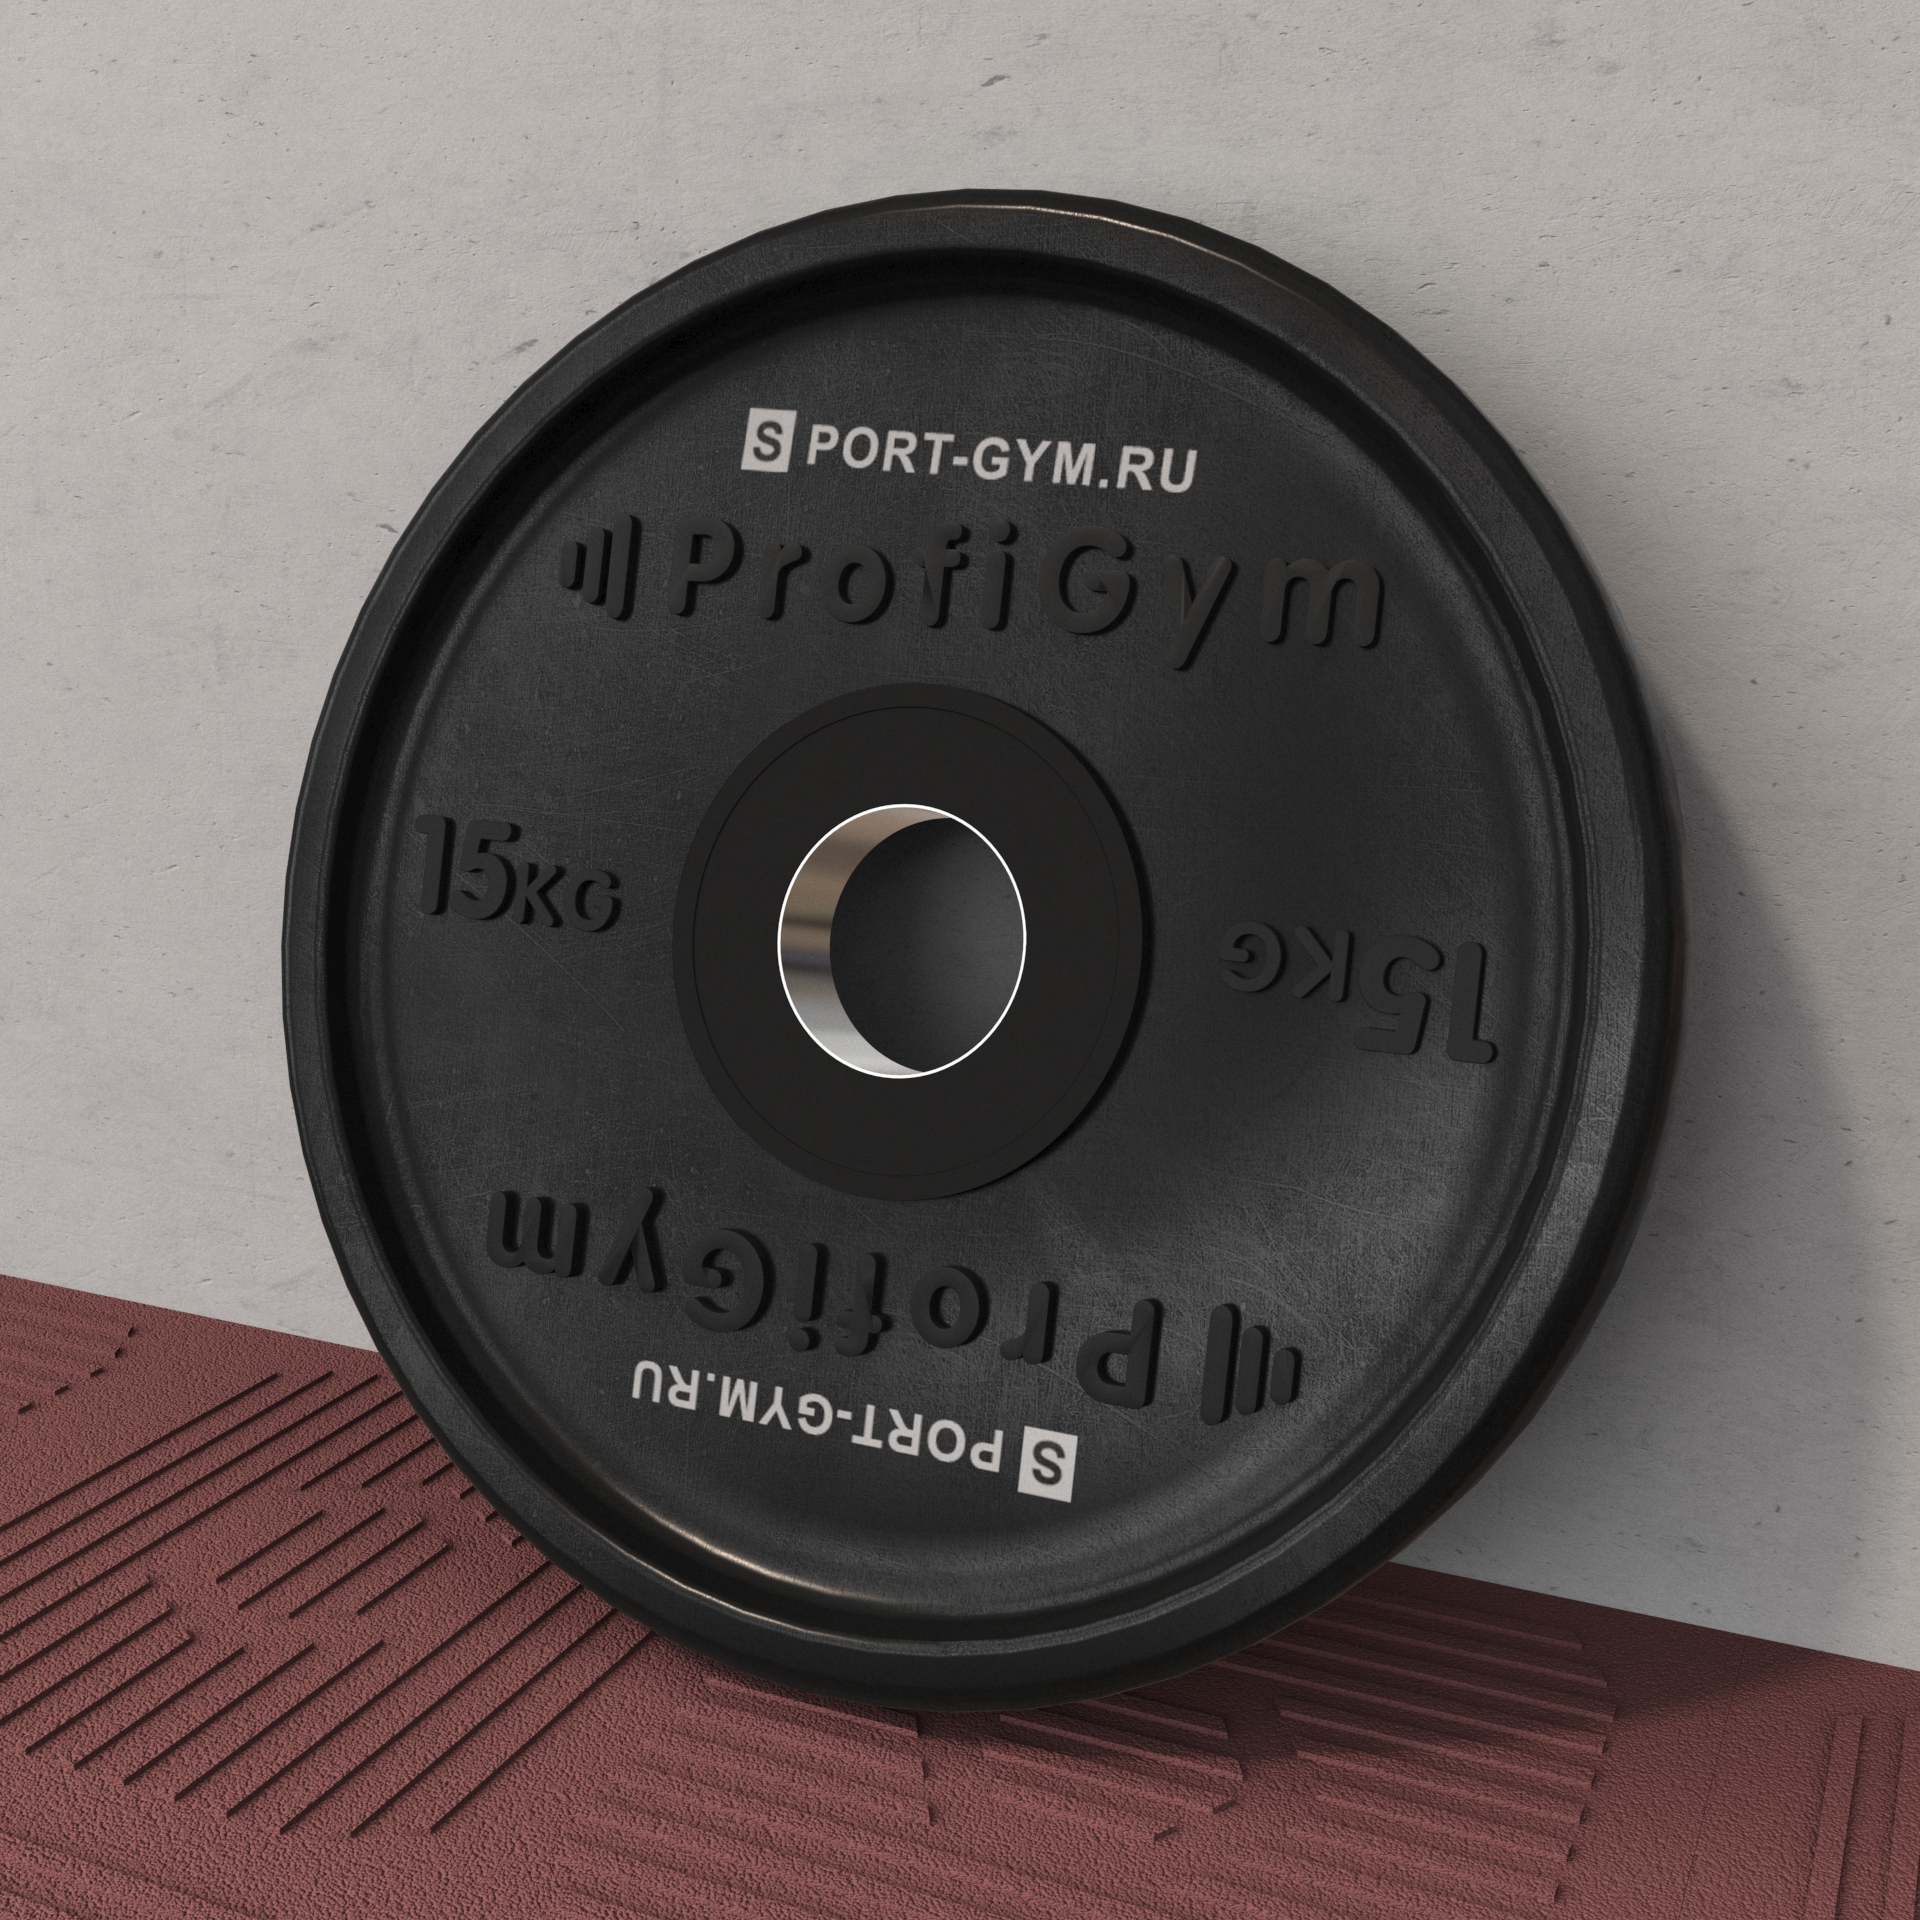 Черный олимпийский диск Profigym 15 кг